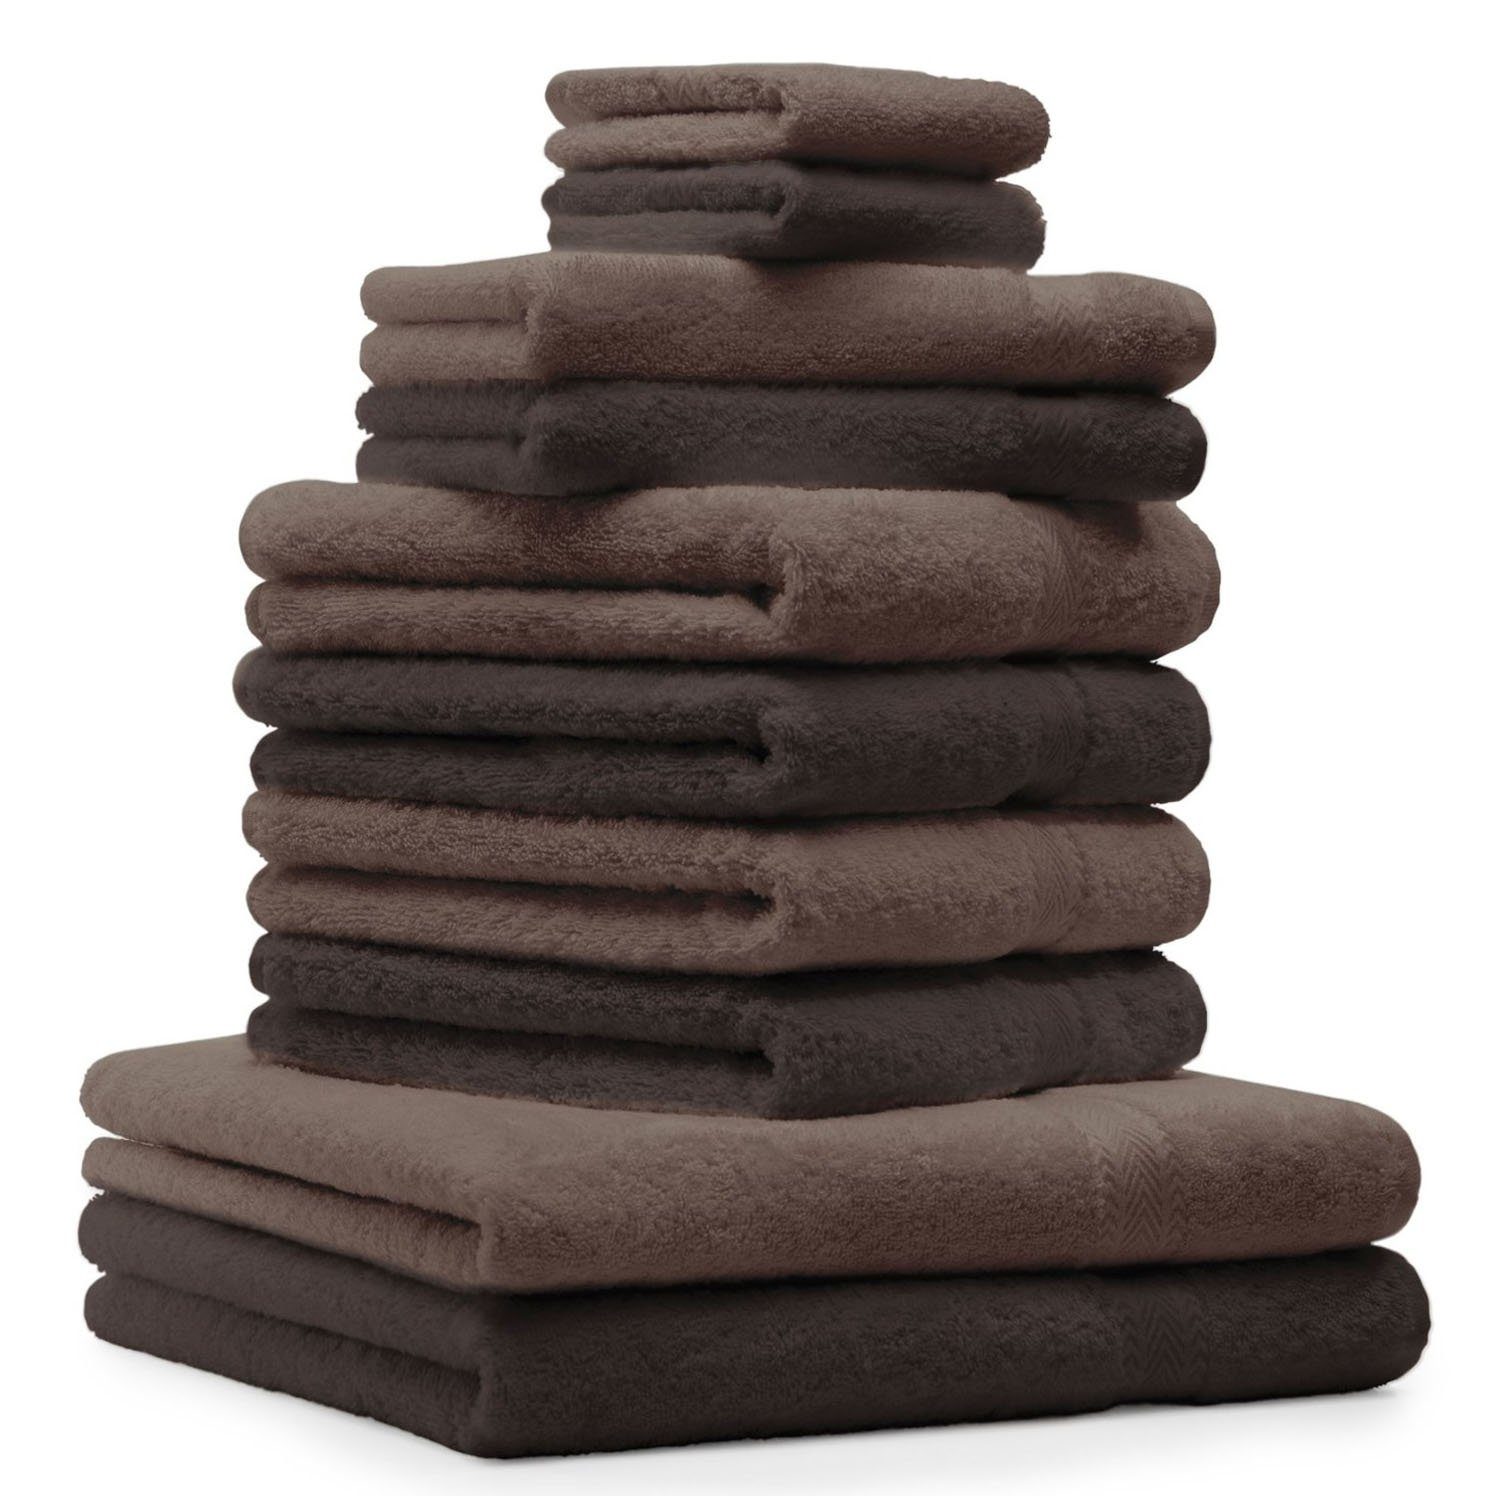 Betz Handtuch Set 10-tlg. Handtuch-Set Classic Farbe dunkelbraun und nussbraun, 100% Baumwolle